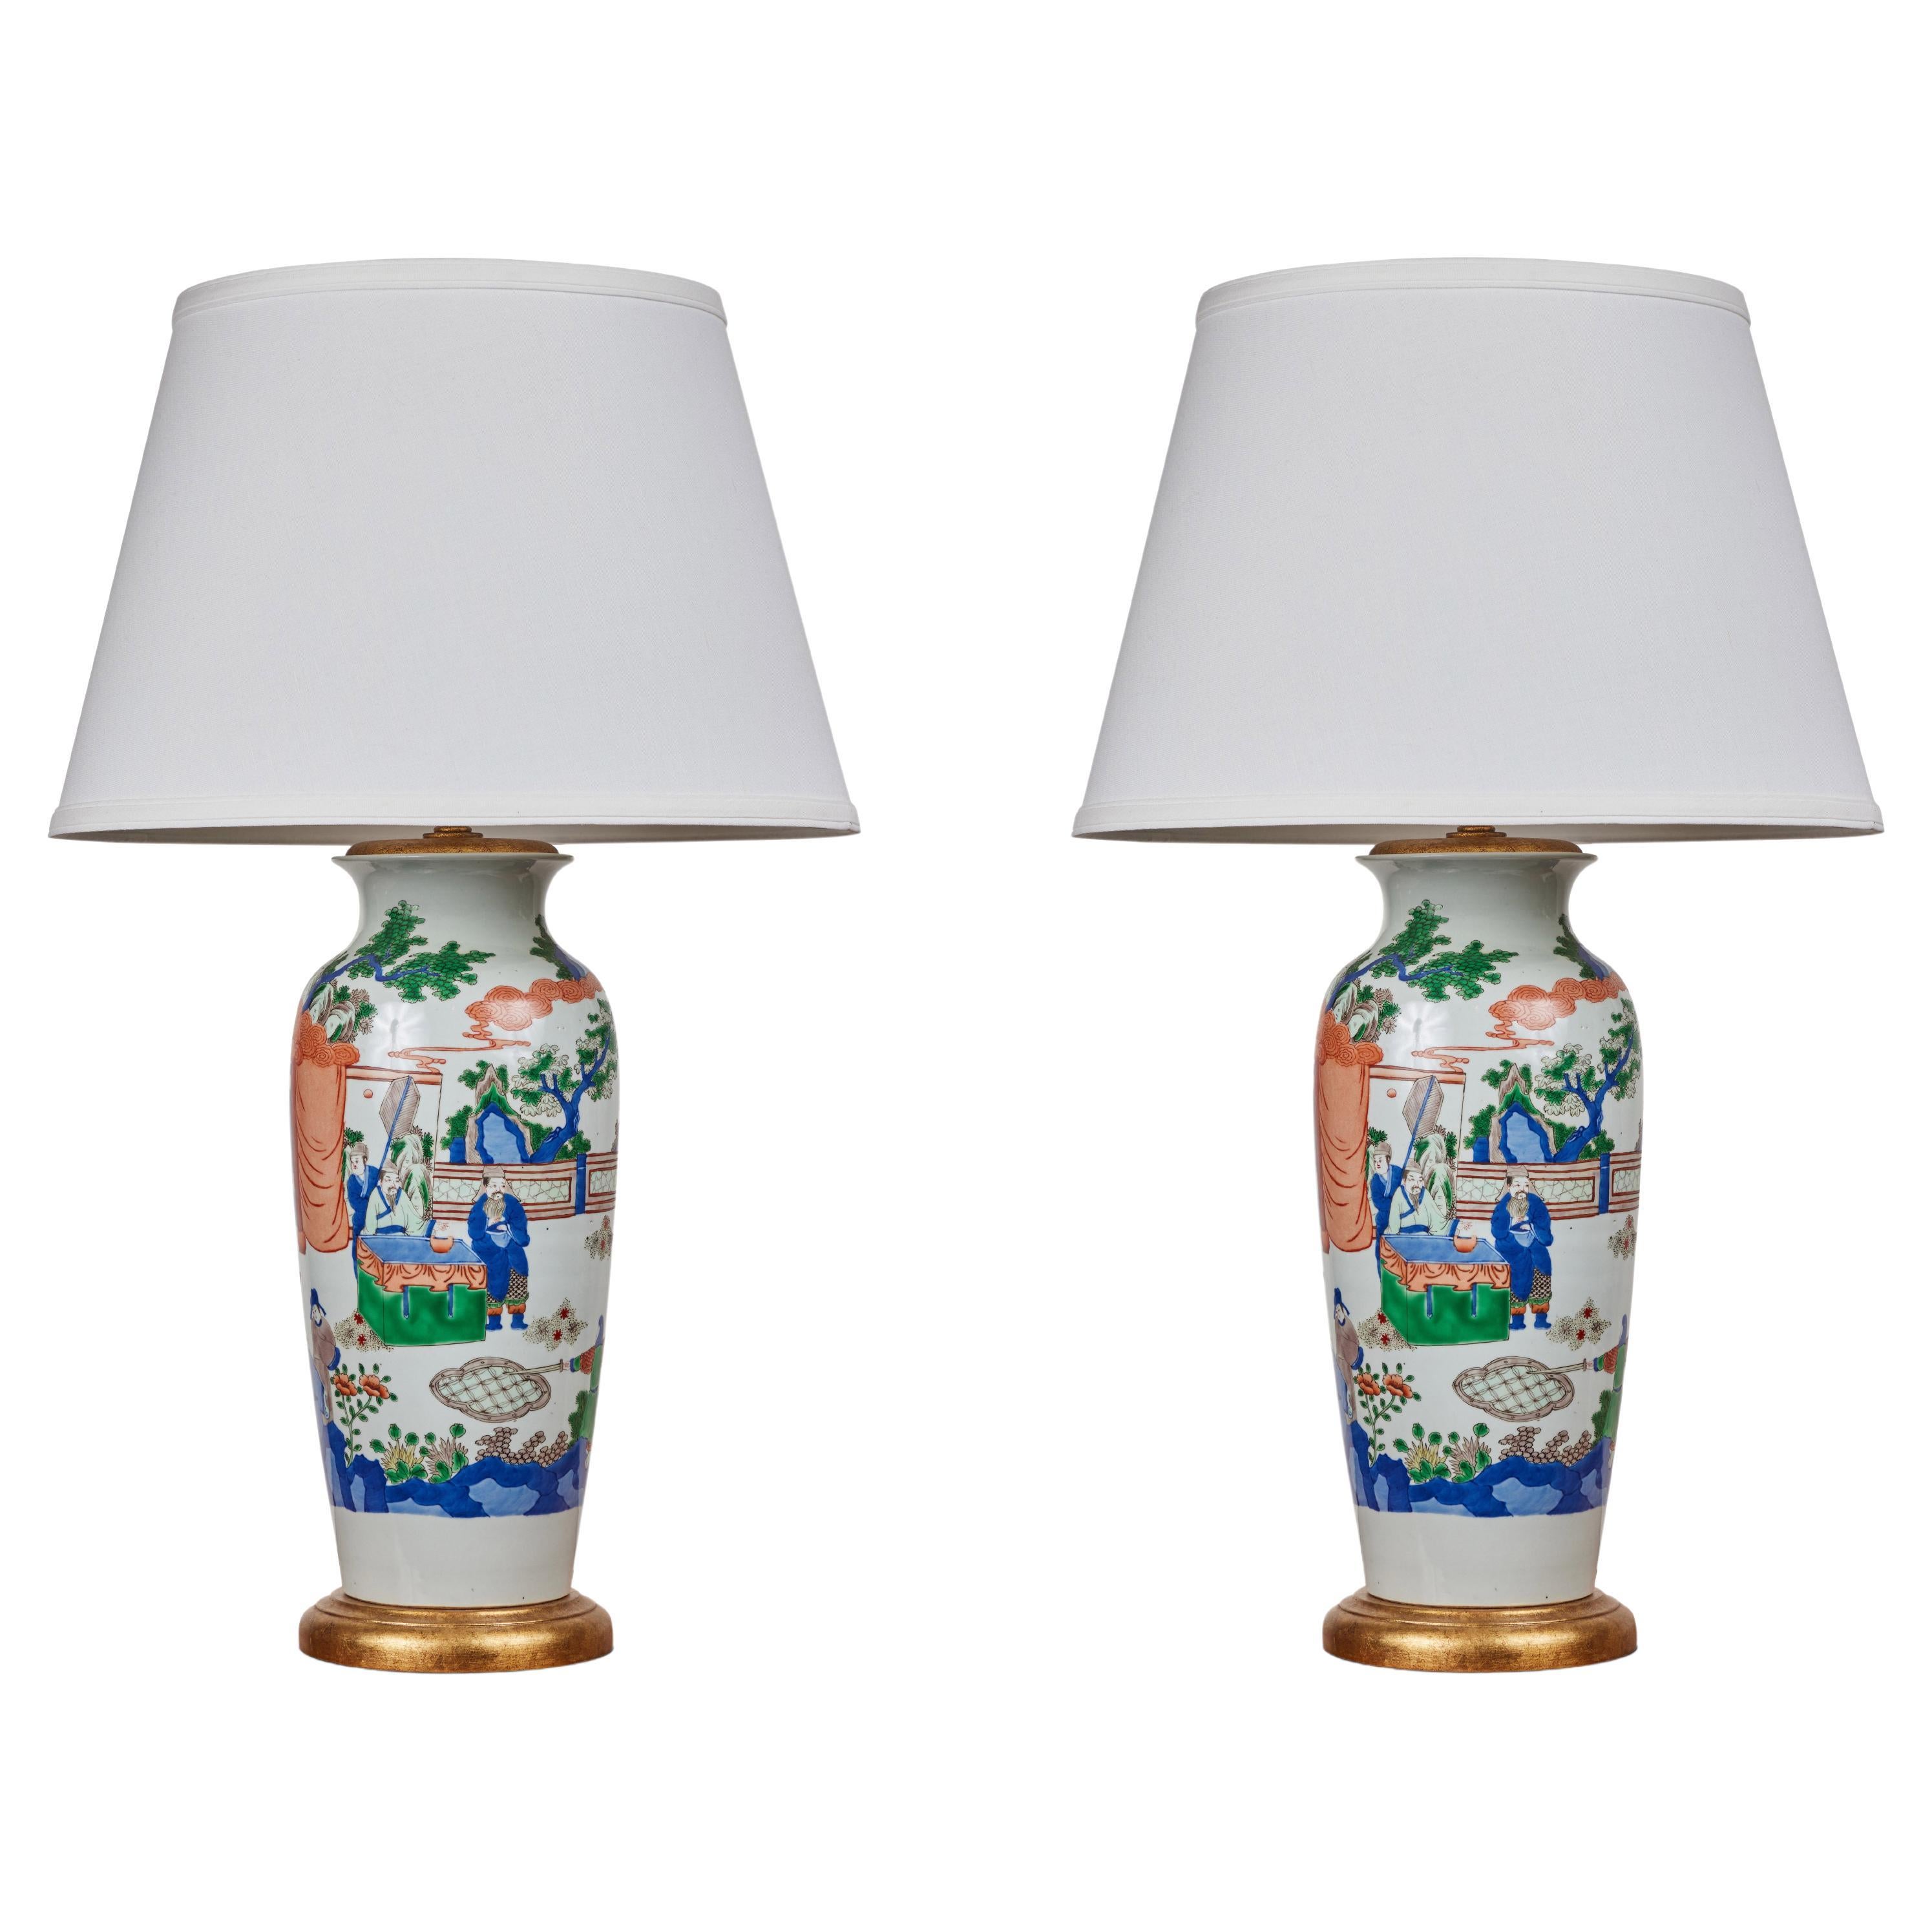 Republic Period, Porcelain Table Lamps For Sale